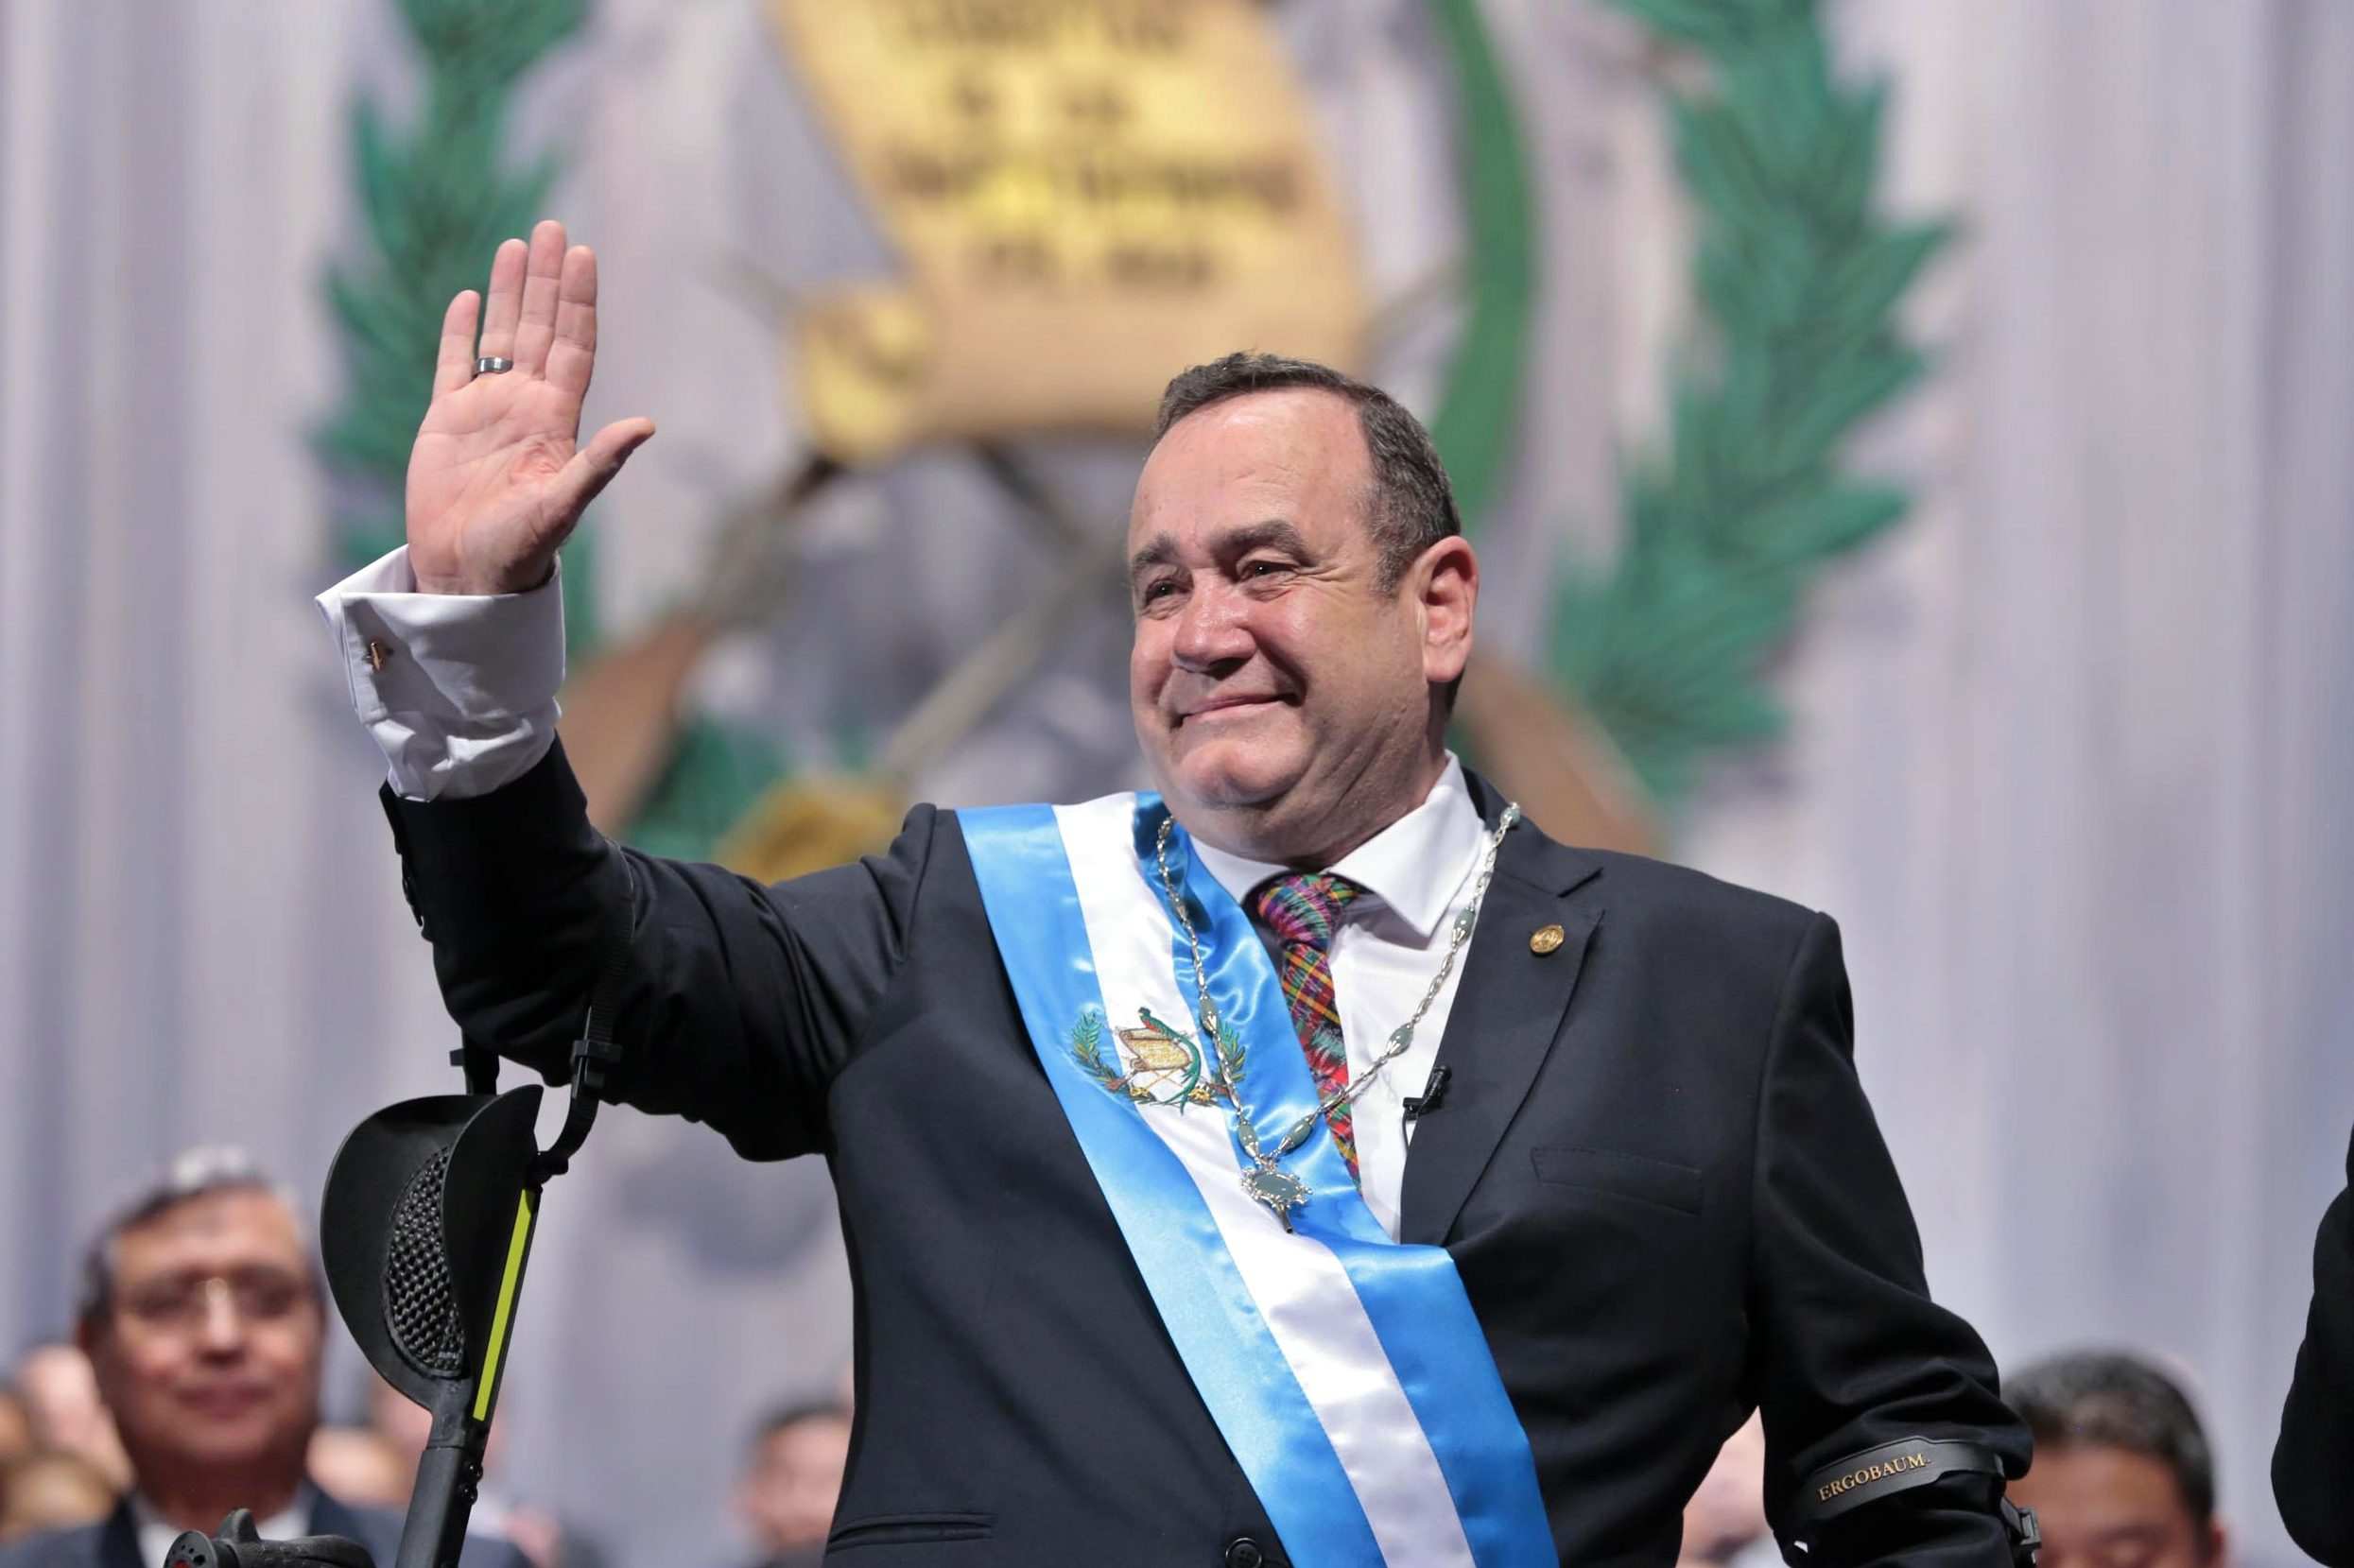 Falso que el presidente de Guatemala haya sufrido un atentado